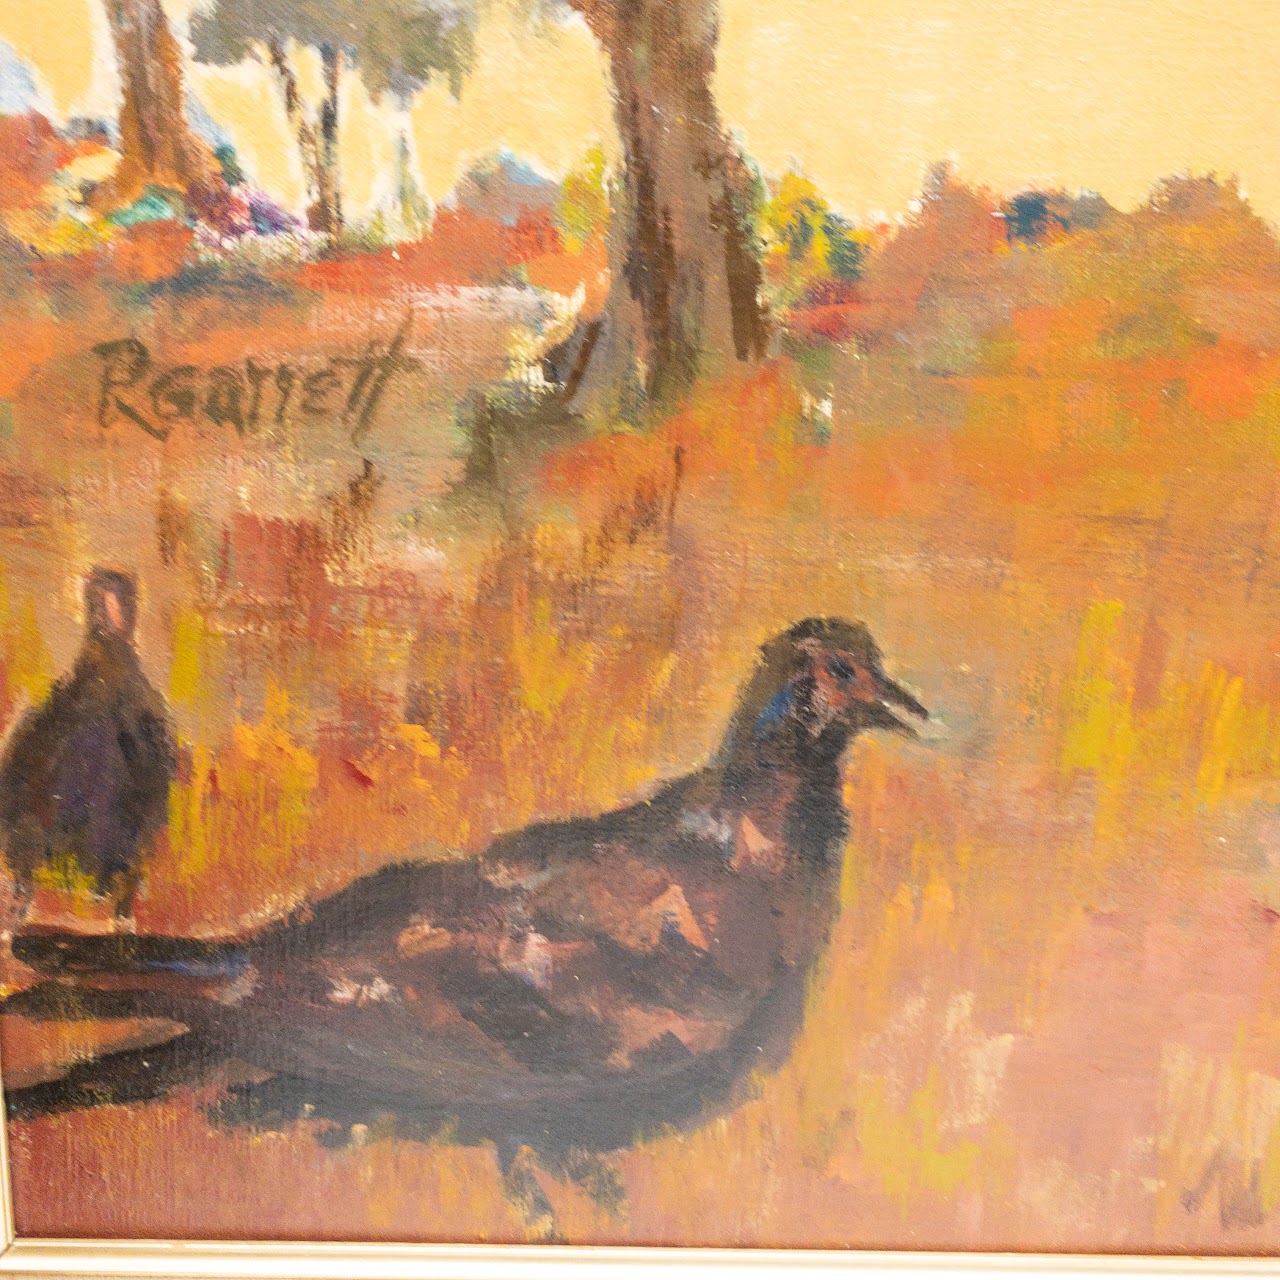 R. Garrett Signed Oil Painting